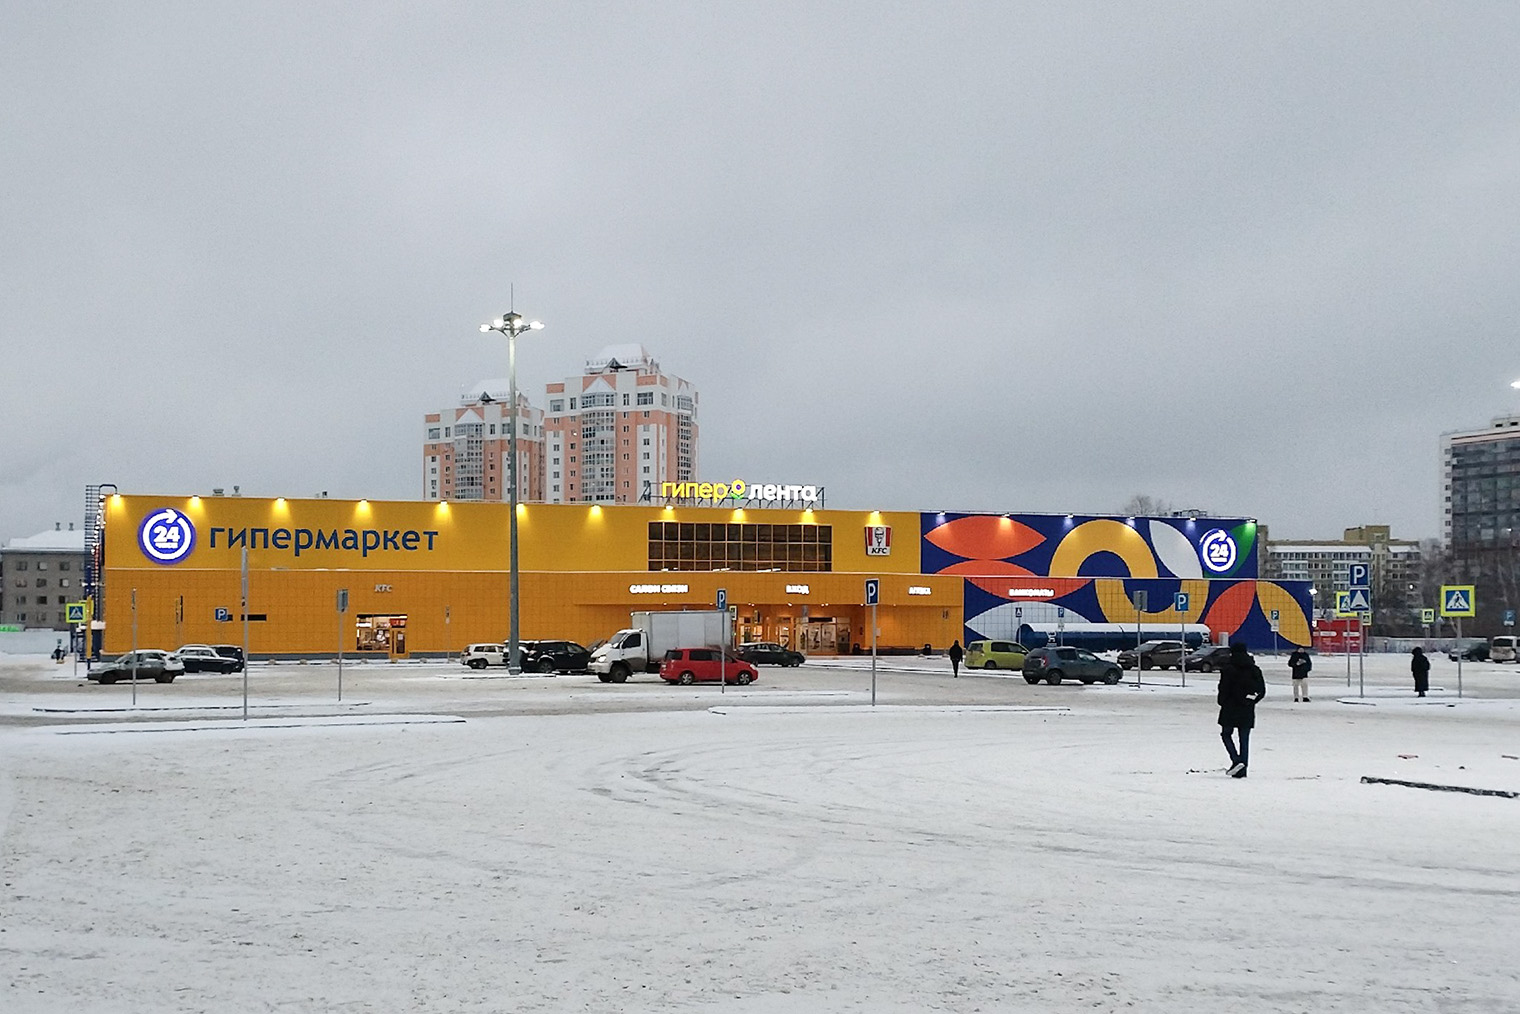 «Лента» на улице Елизаровых — один из самых больших гипермаркетов в Томске